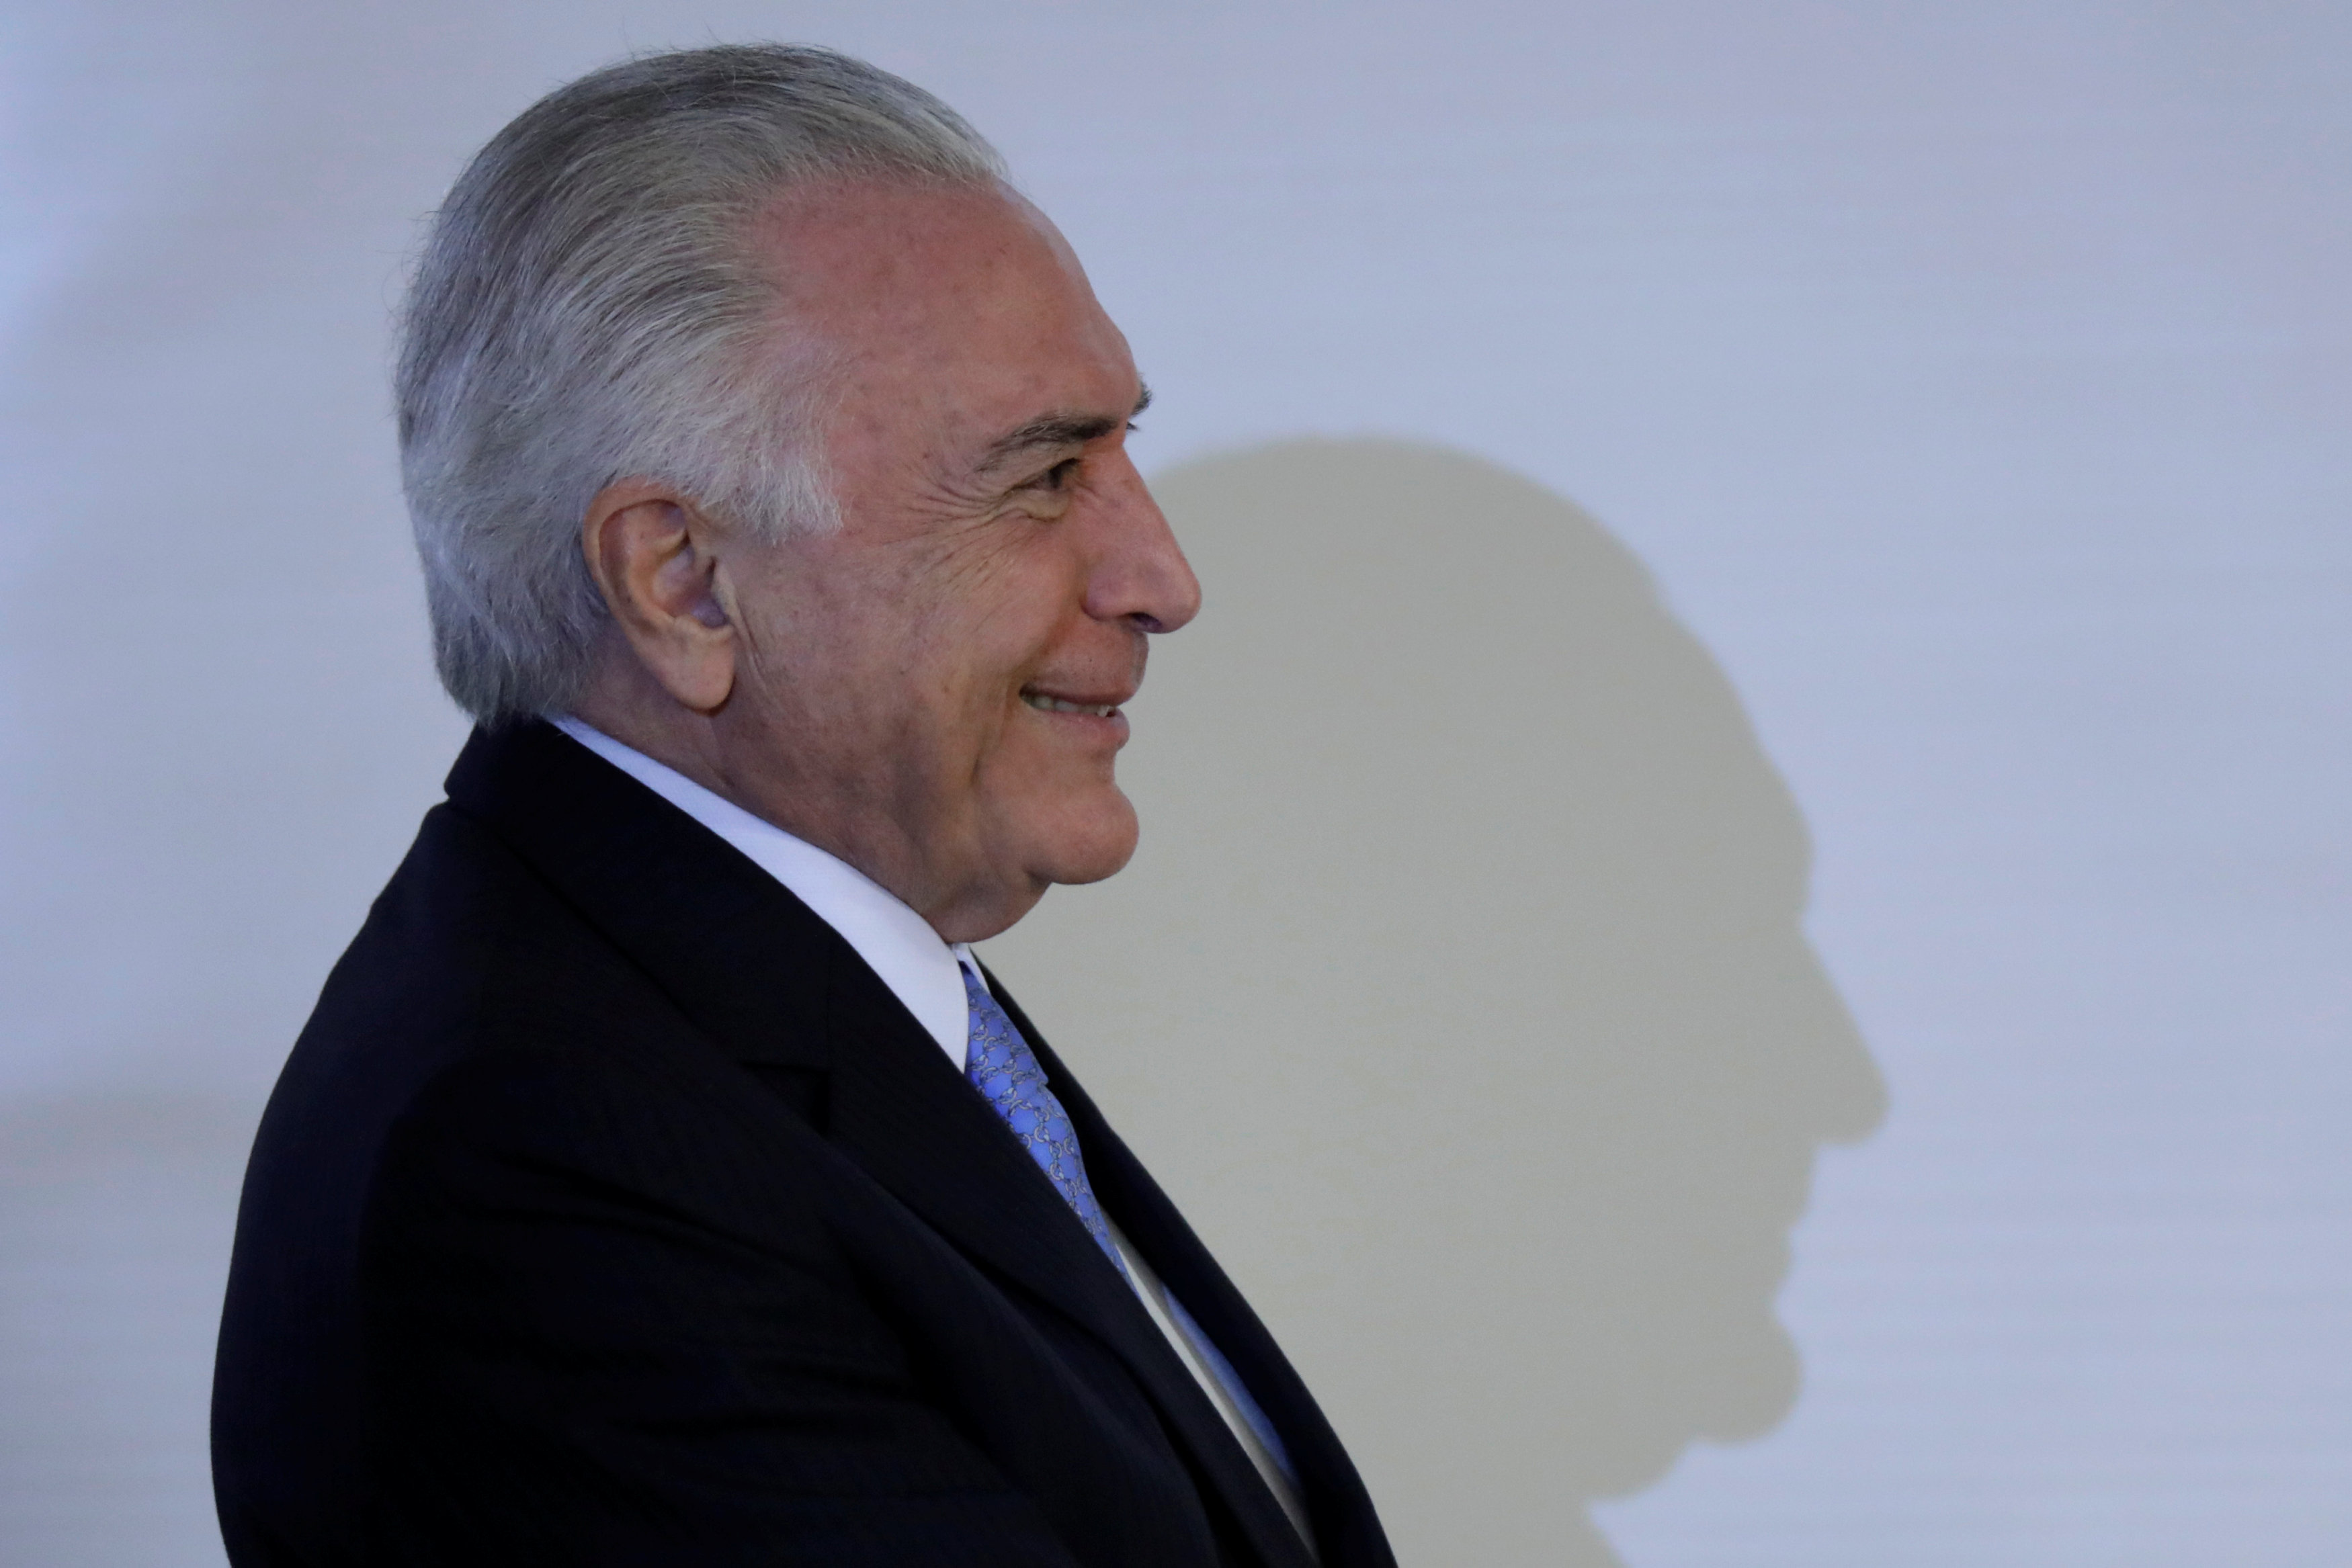 Corte Suprema Brasil autoriza levantar secreto bancario Temer